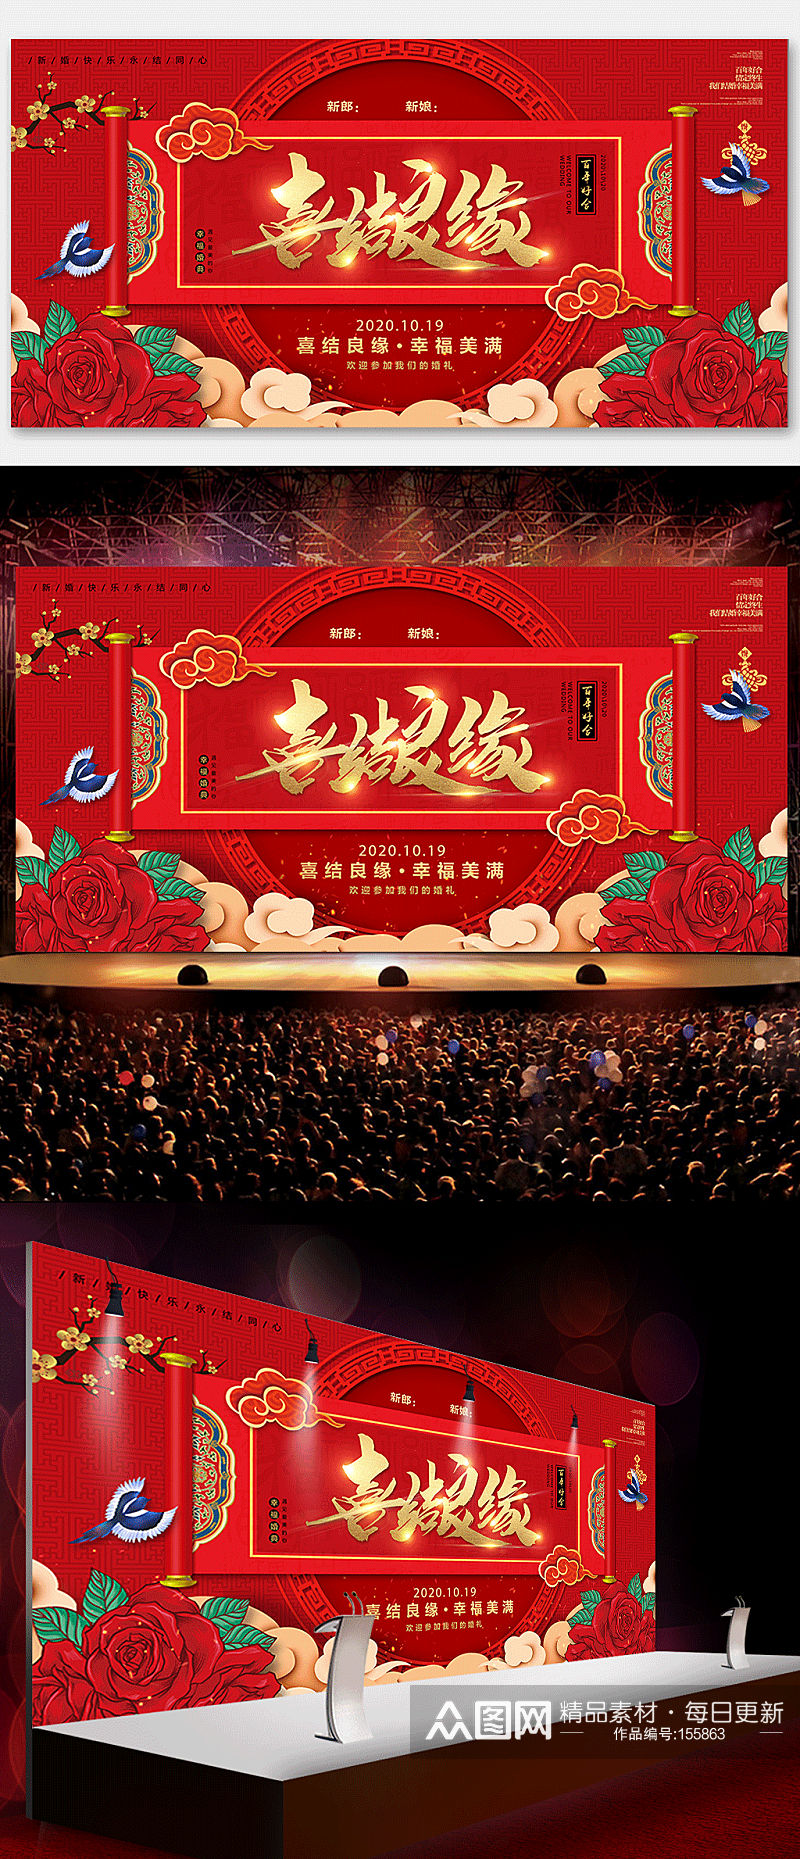 中式国潮风婚庆展板背景喜结良缘 婚礼迎宾背景展板素材